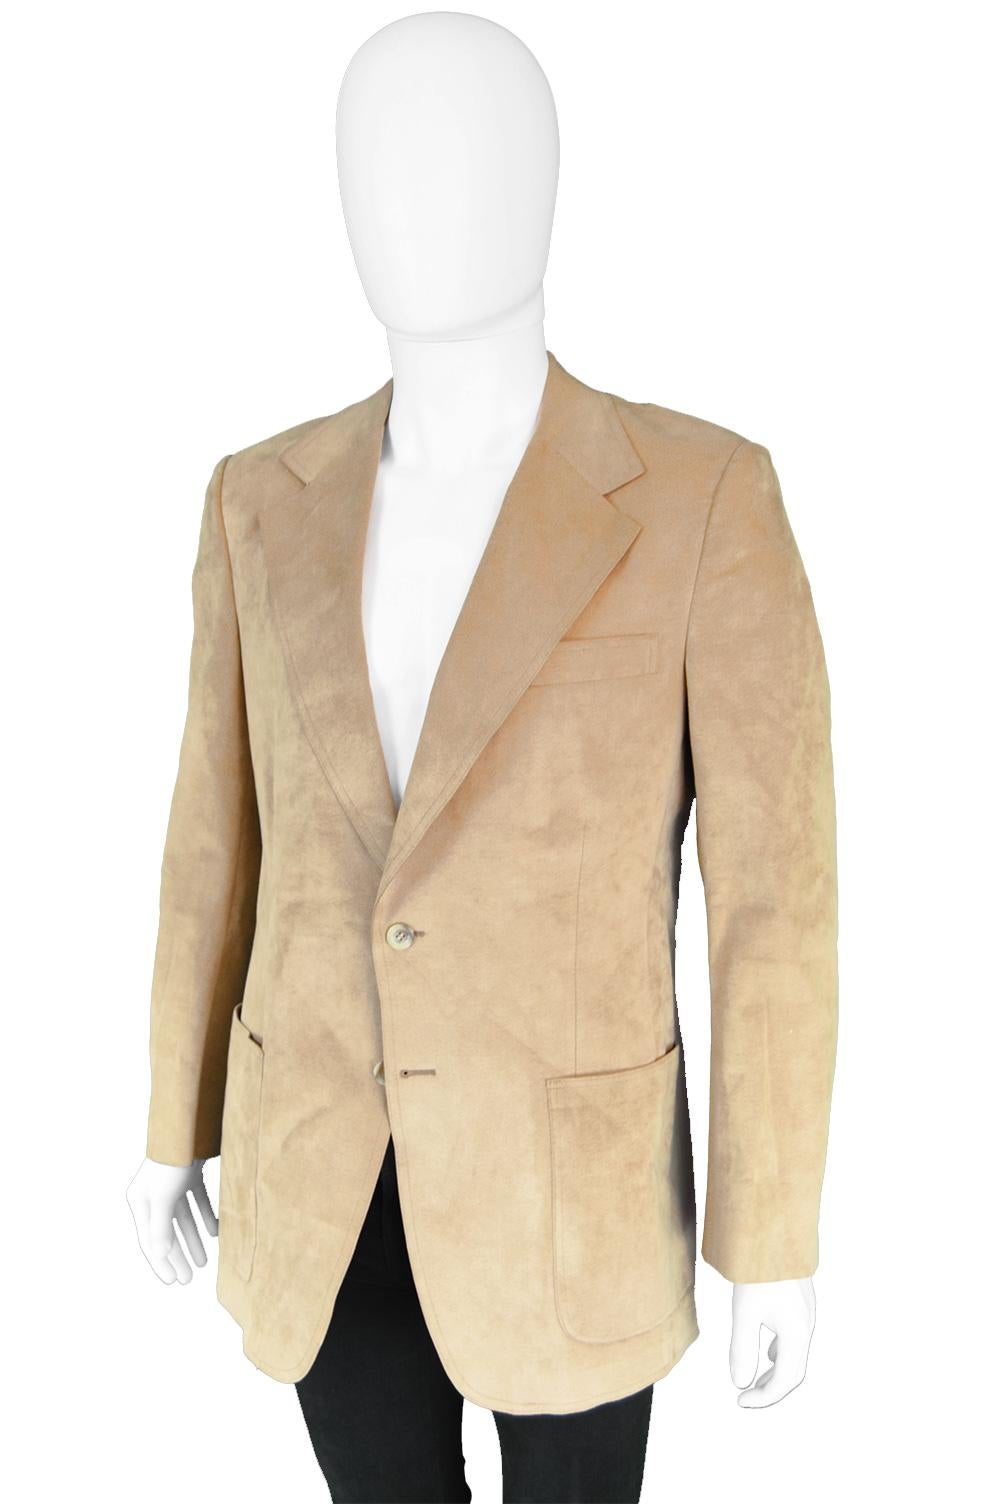 Halston for I. Magnin Men's Vintage 'Halsuede' Brown Blazer Jacket ...